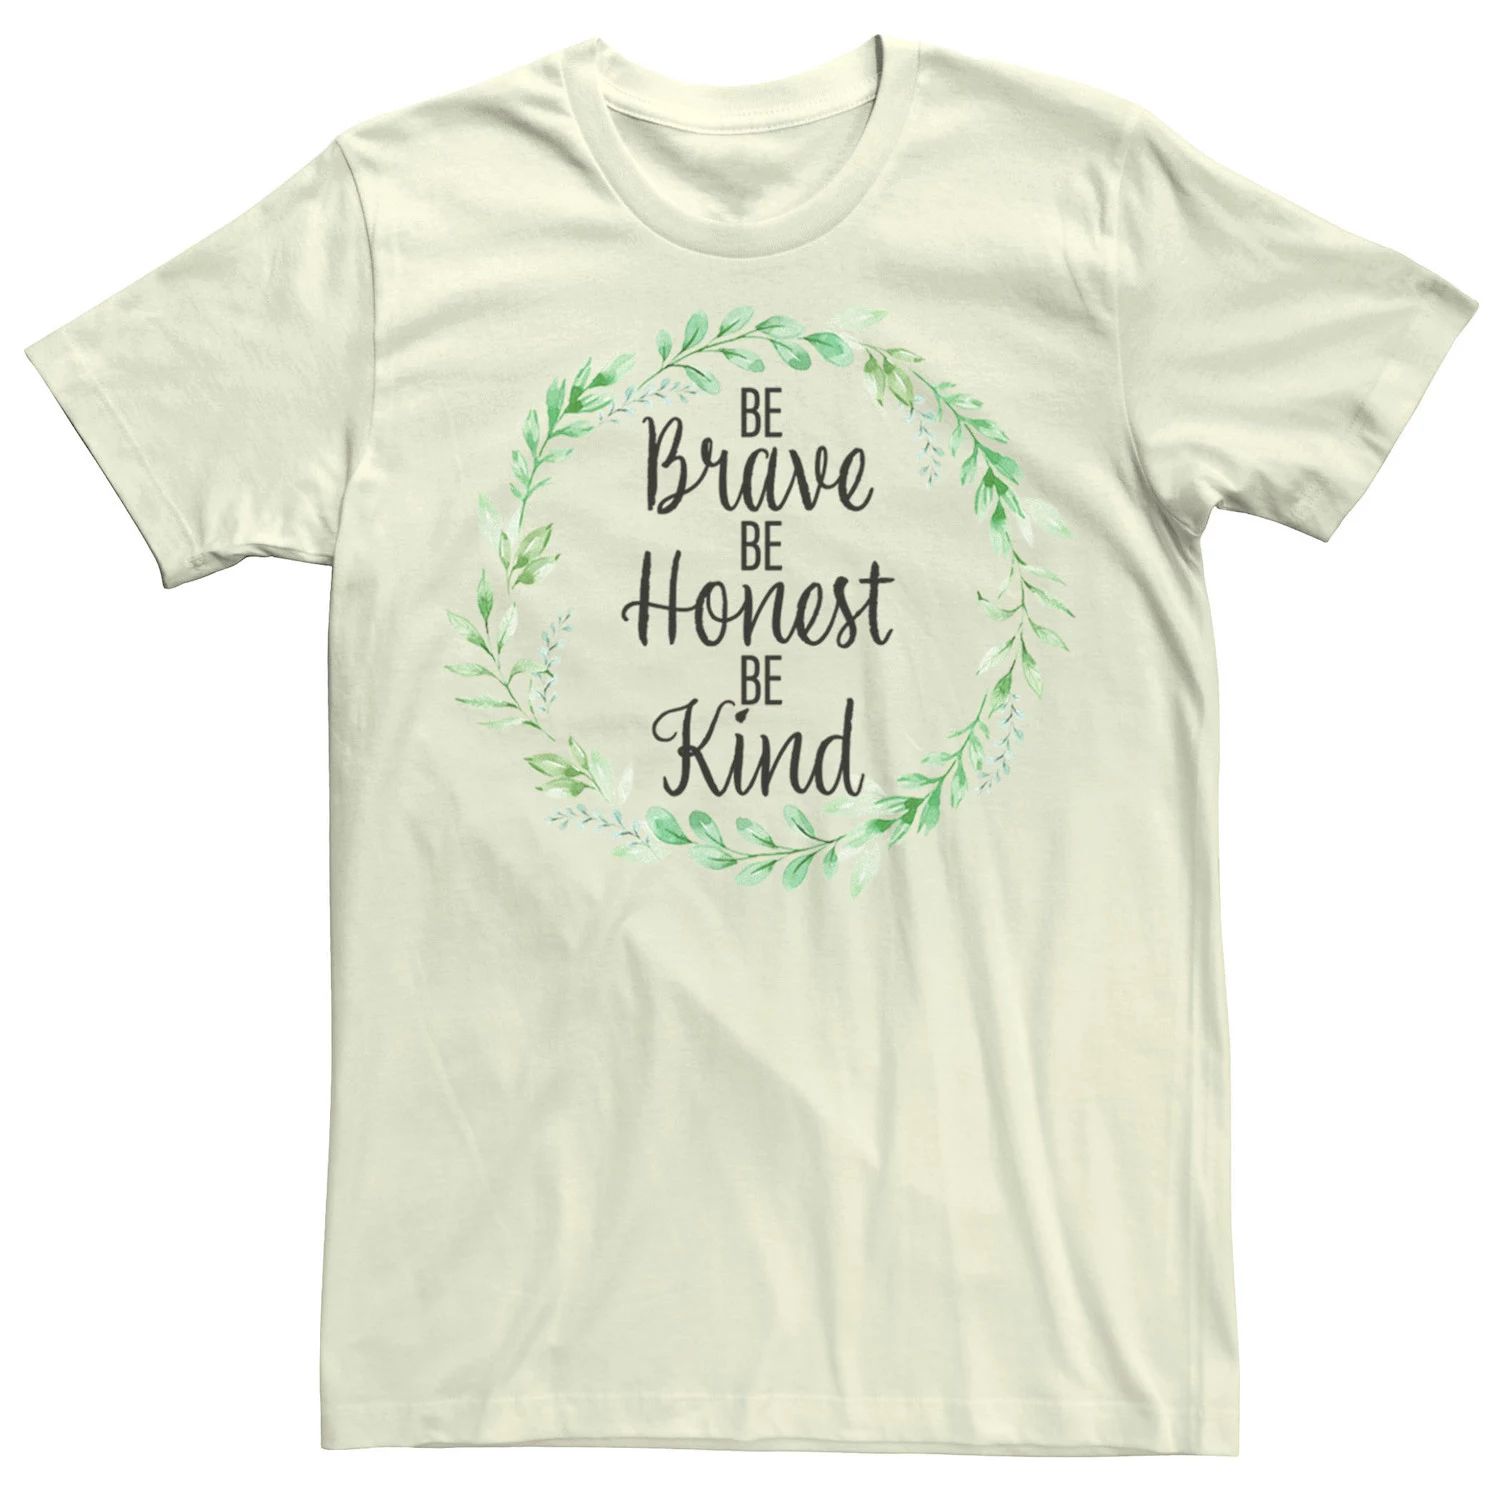 Мужская футболка Fifth Sun Brave Honest Kind с надписью Licensed Character мужская футболка с надписью fifth sun summer plans licensed character